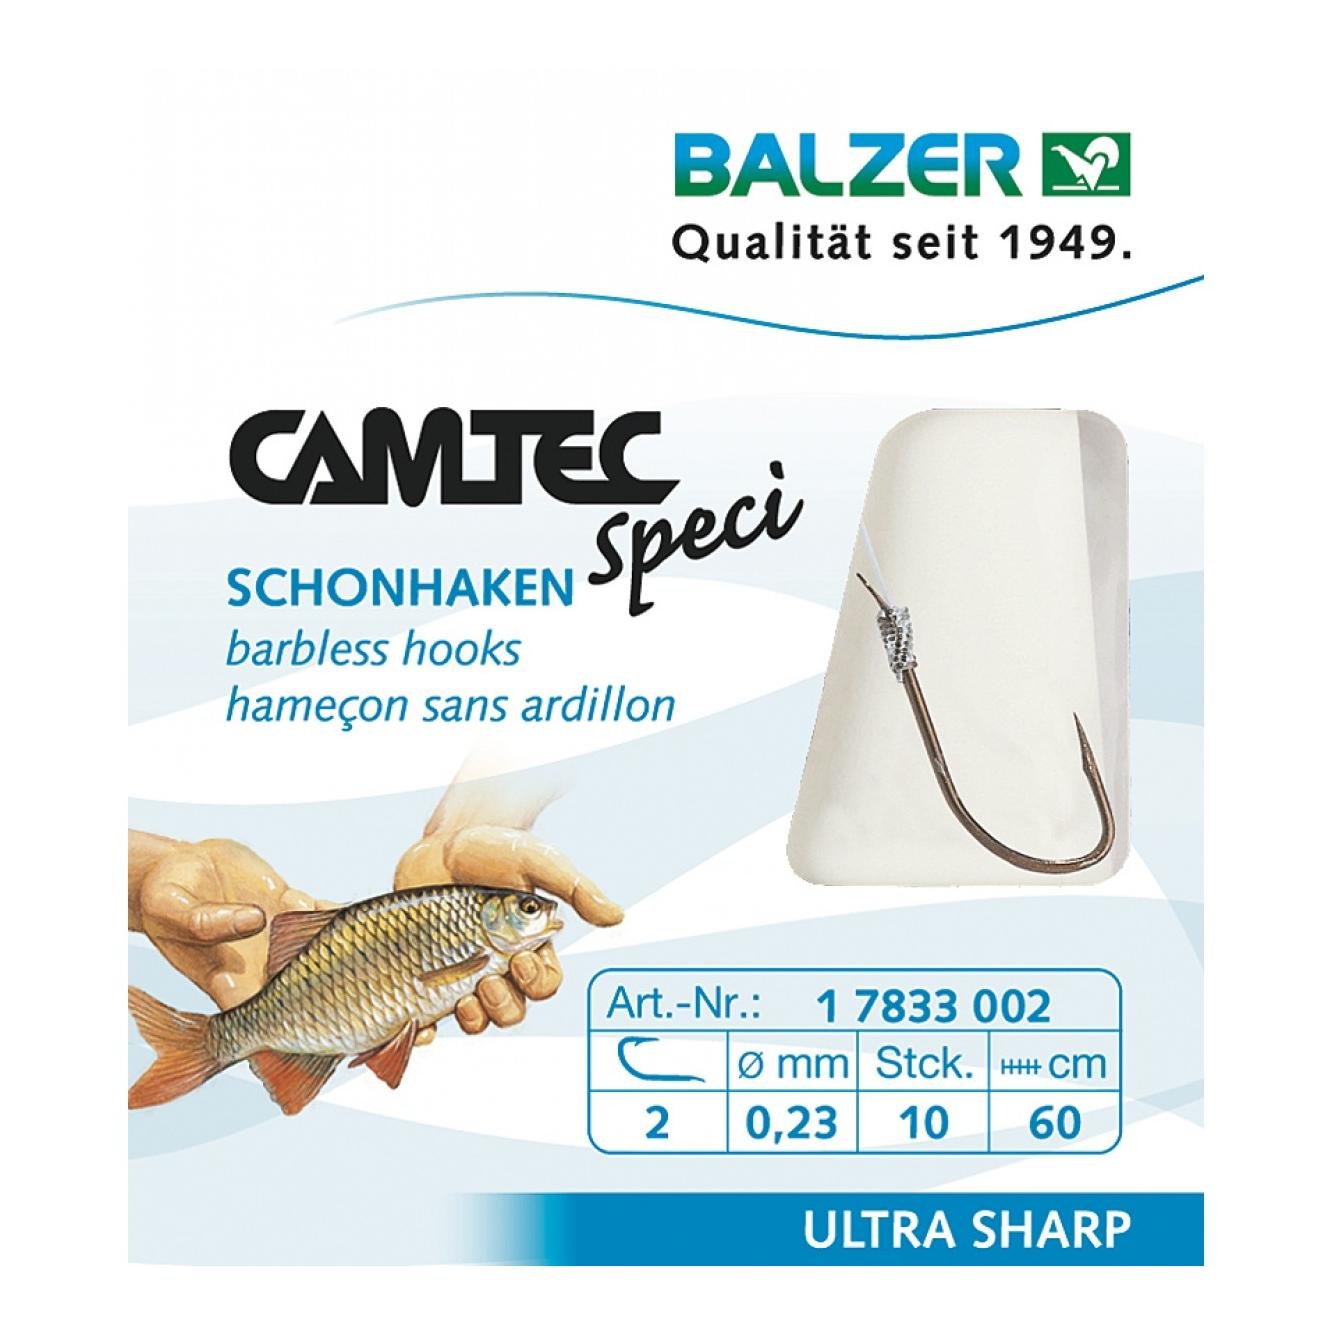 Image of Balzer Camtec Speci Schonhaken ohne Widerhaken bei fischen.ch